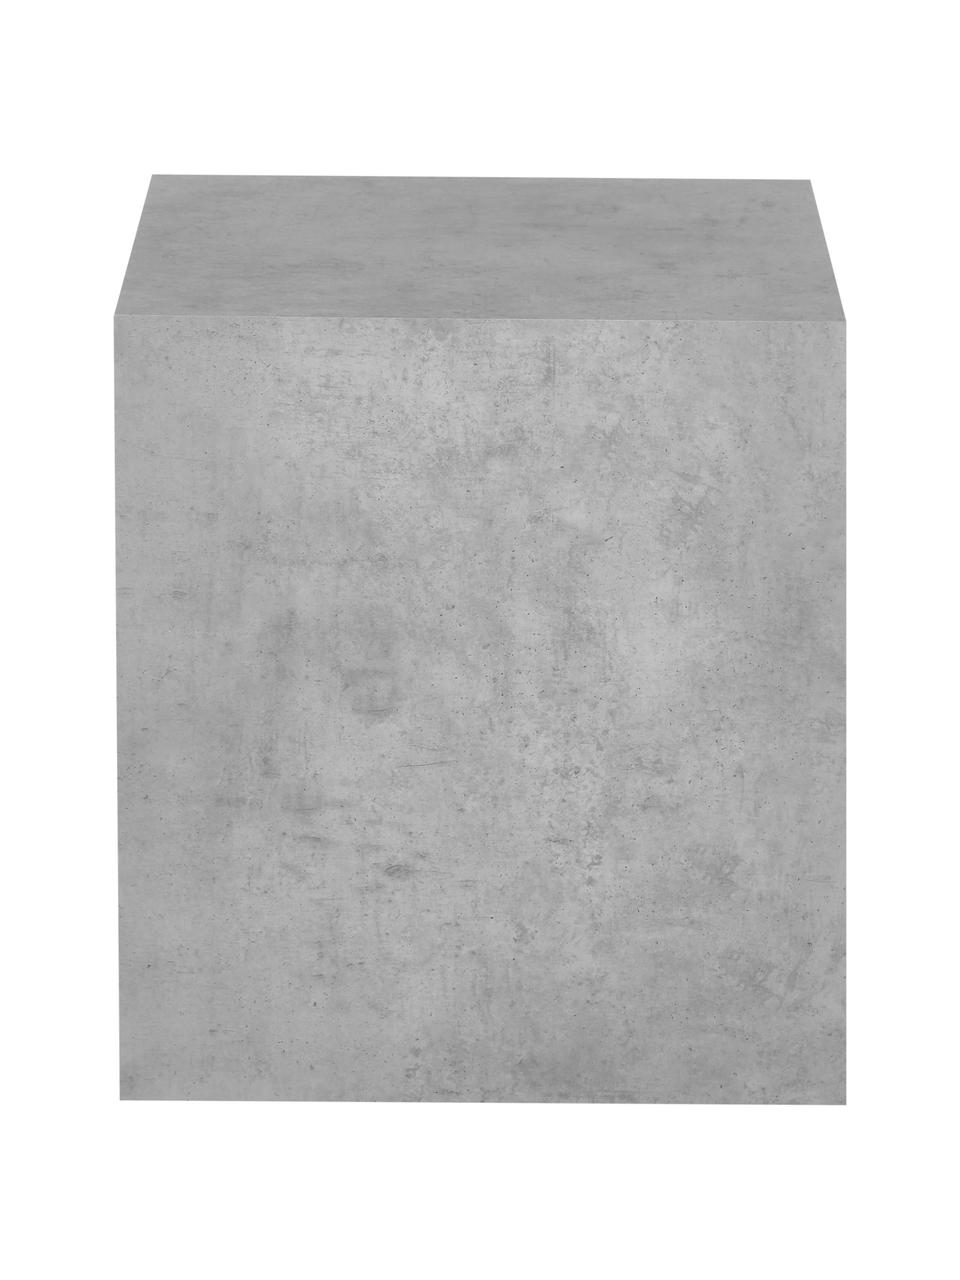 Table d'appoint aspect béton Lesley, MDF (panneau en fibres de bois à densité moyenne), enduit feuille mélaminée, Gris, aspect béton, larg. 45 x haut. 50 cm